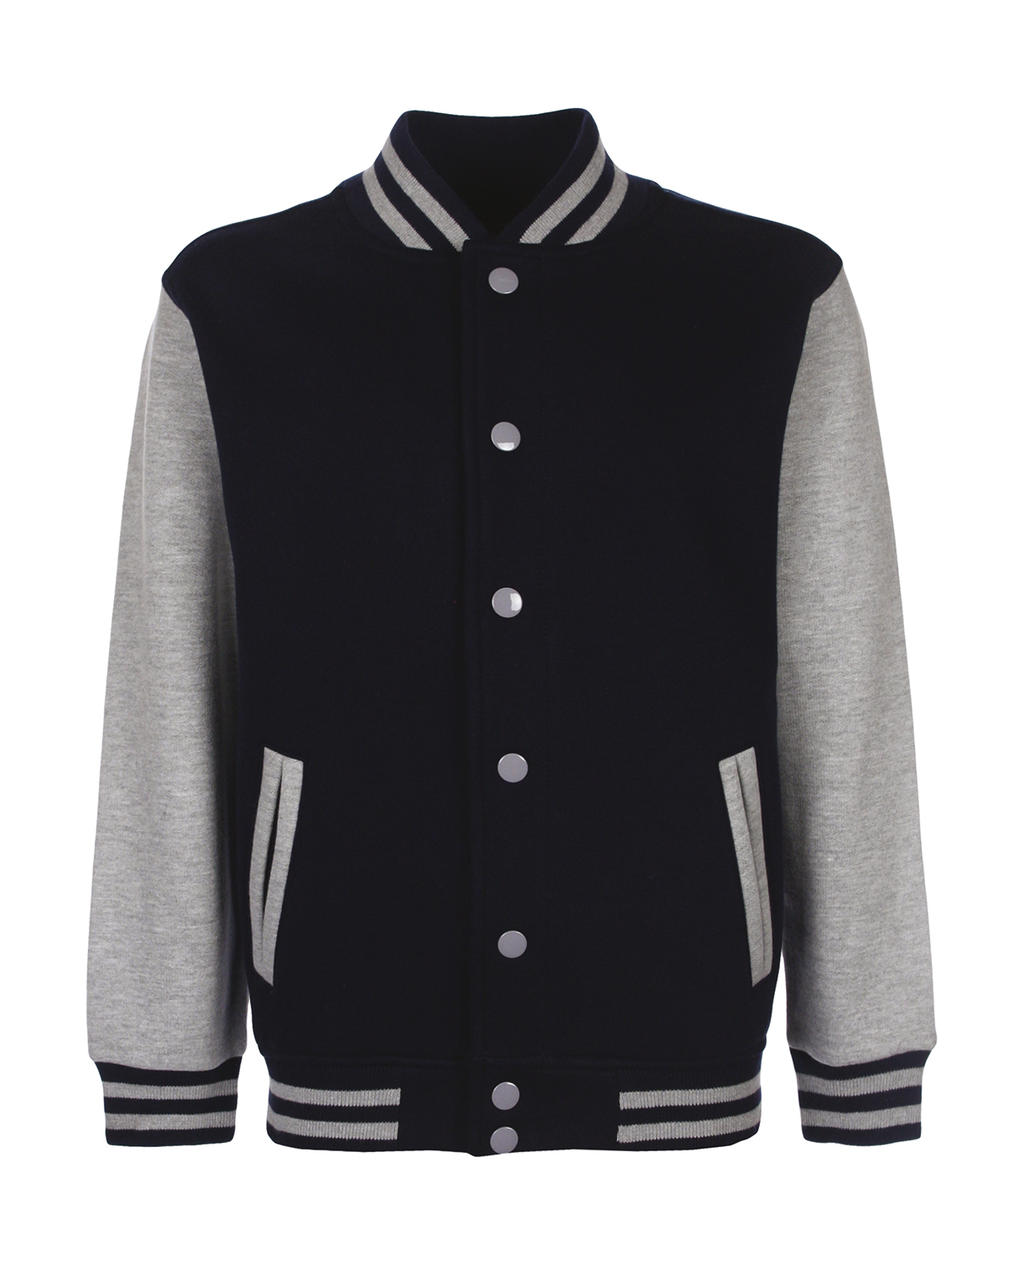  Junior Varsity Jacket in Farbe Navy/Sport Grey